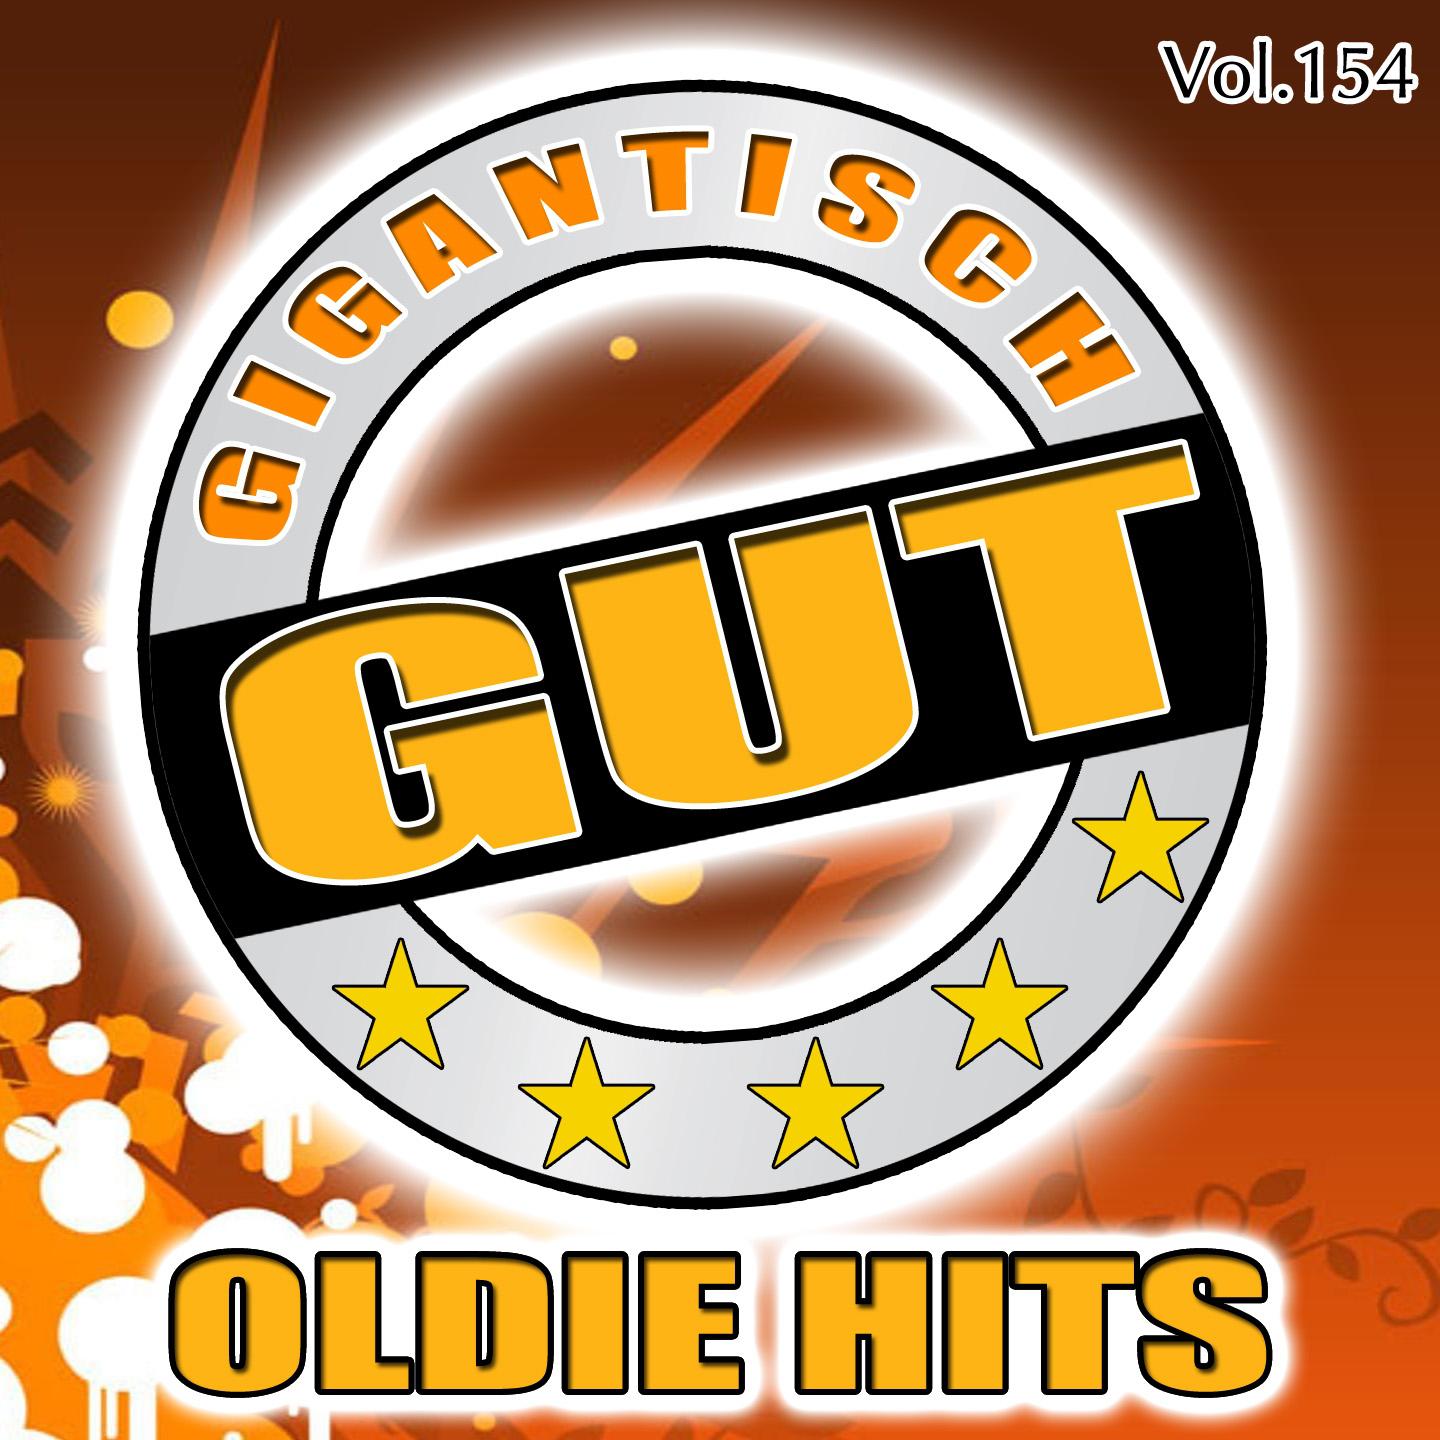 Gigantisch Gut: Oldie Hits, Vol. 154